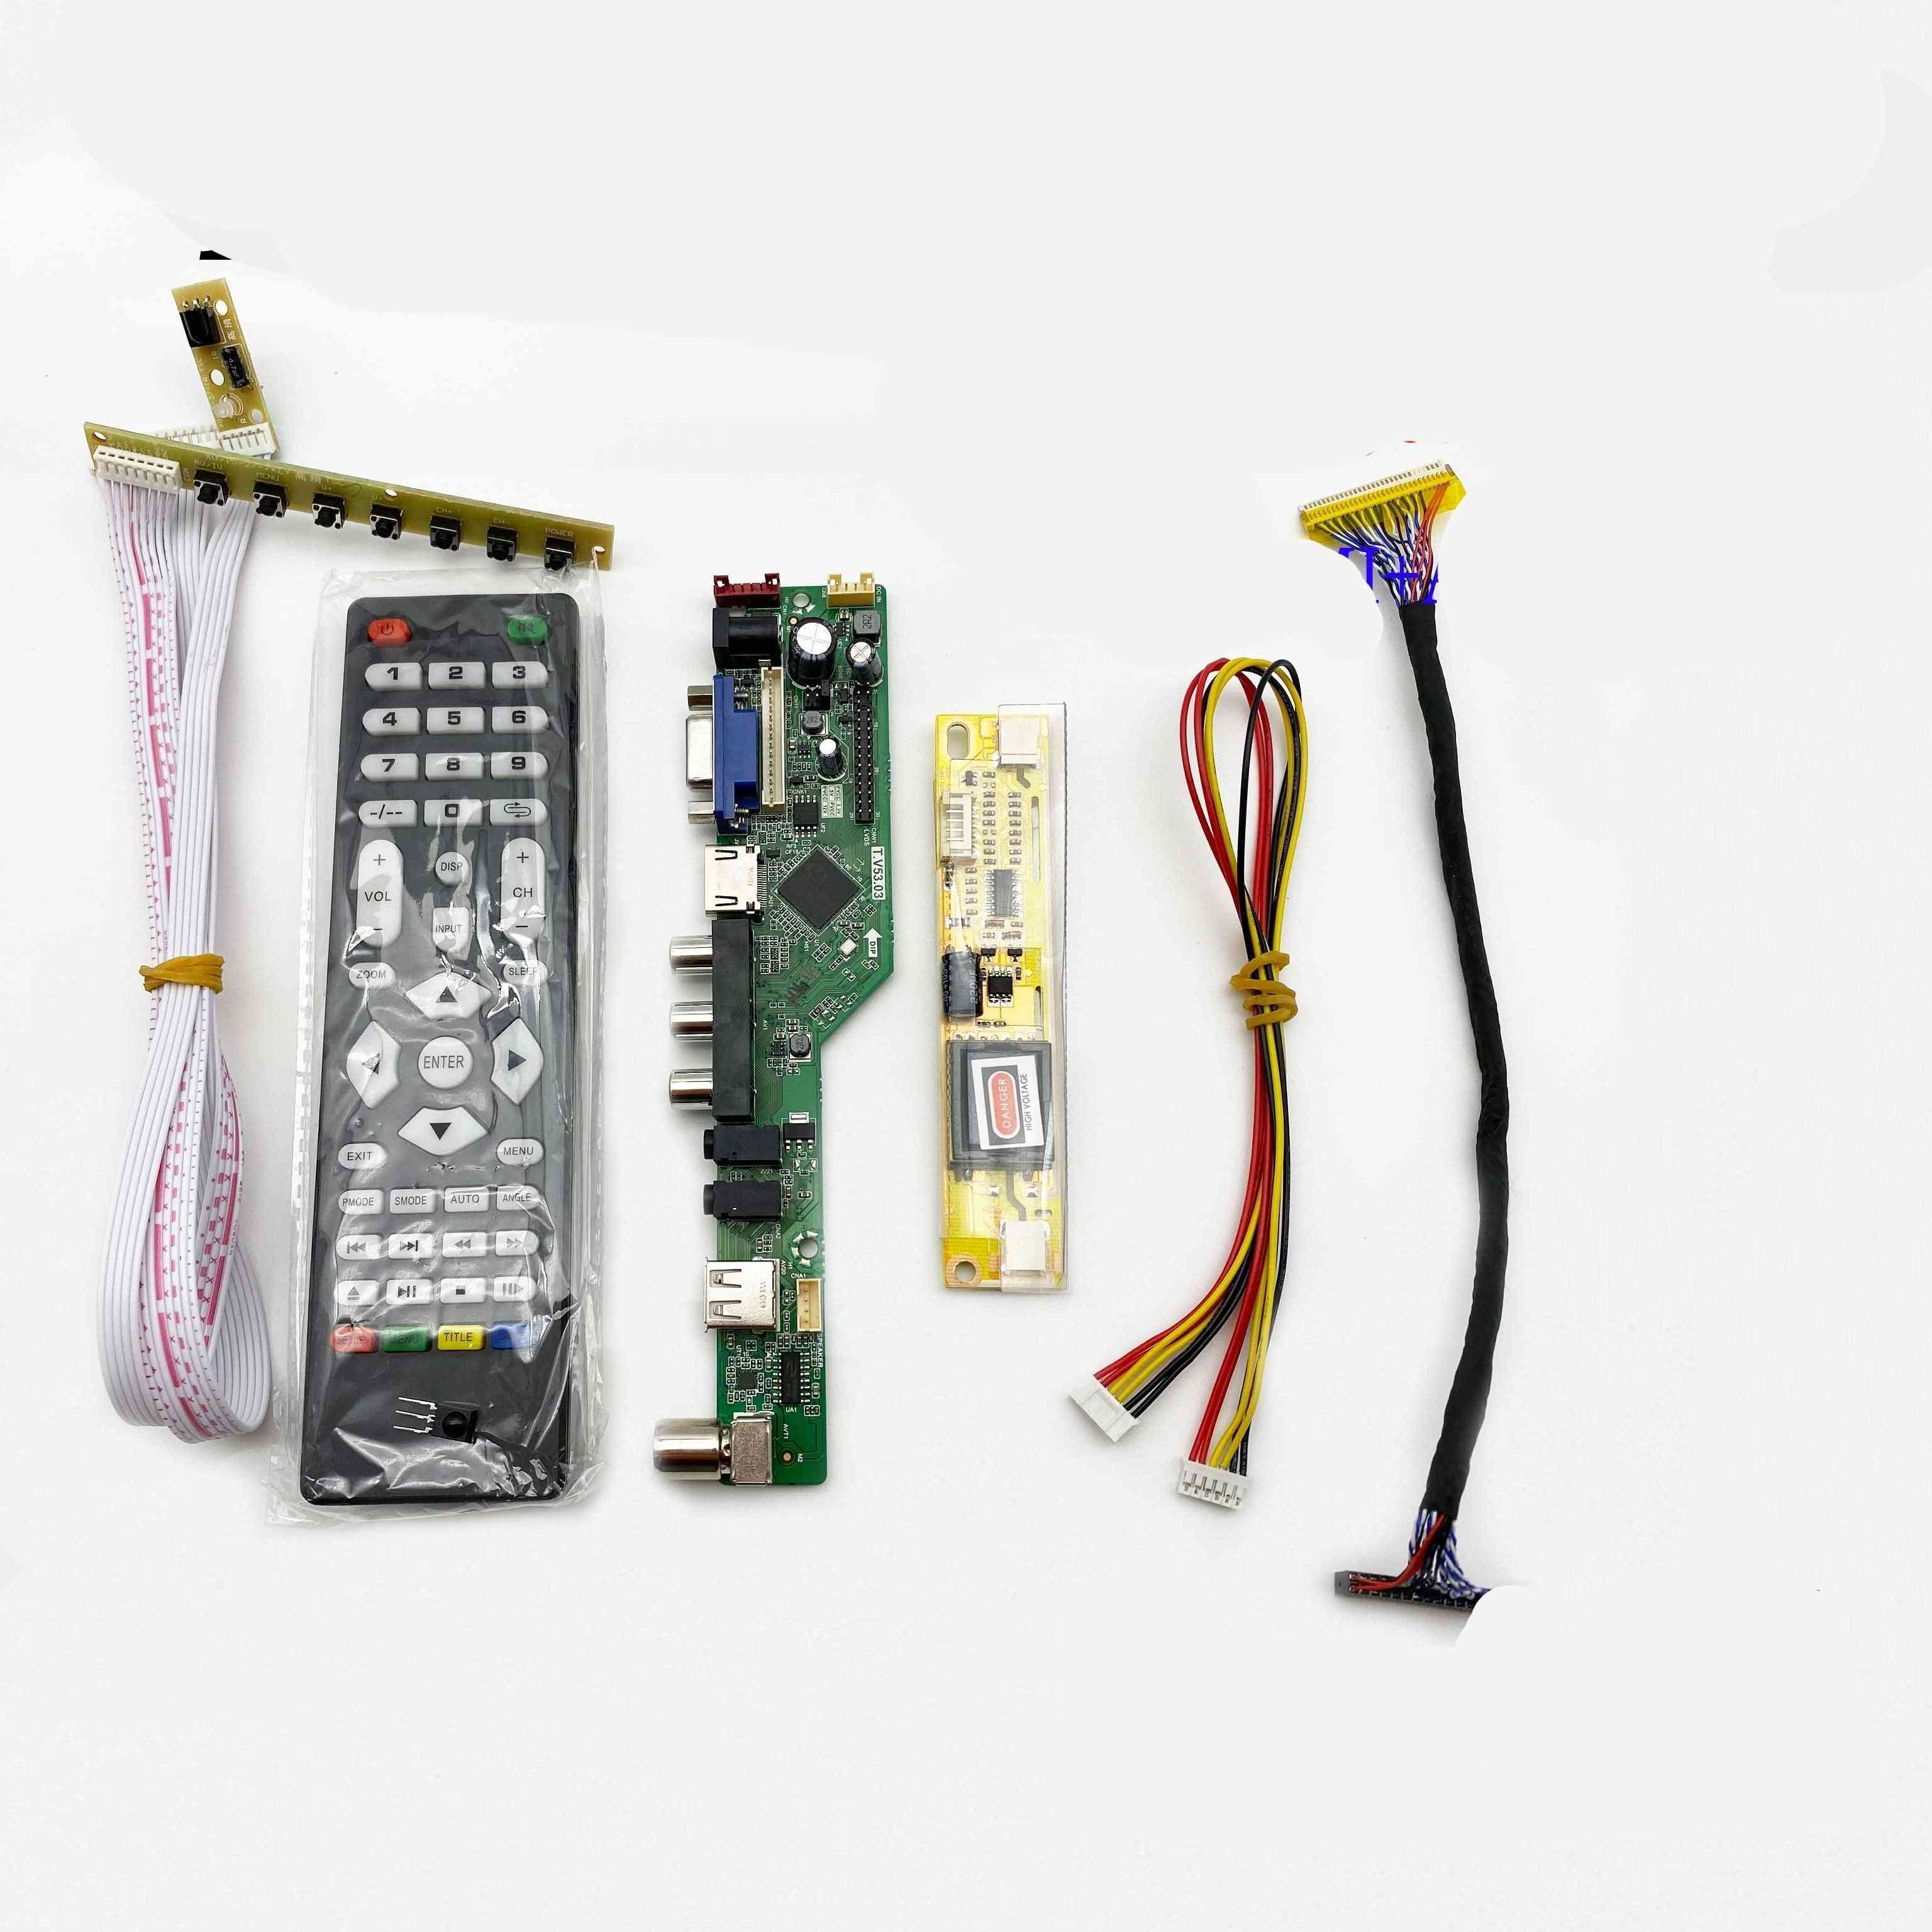 Universal-LCD-TV-Controller-Treiberplatine, PC / VGA / HDMI / USB-Schnittstelle + 7-Tastatur + 2-Lampen-Wechselrichter